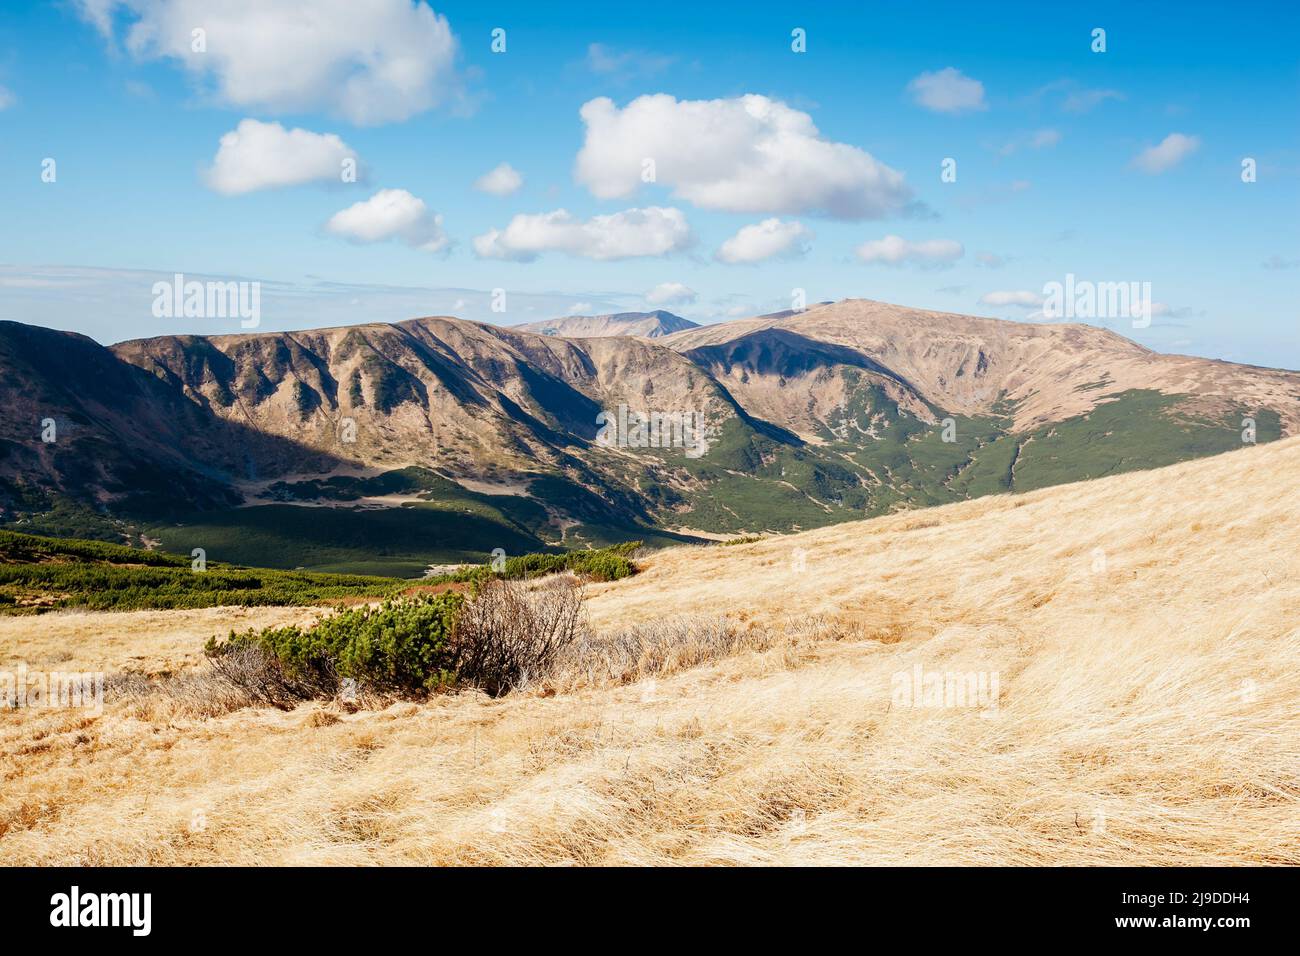 Sehen Sie sich die faszinierende Szene des Alpentals an. Malerischer Tag. Ort Ort Karpaten Ukraine, Europa. Wunderbares Bild von Tapeten. Künstlerisch Stockfoto